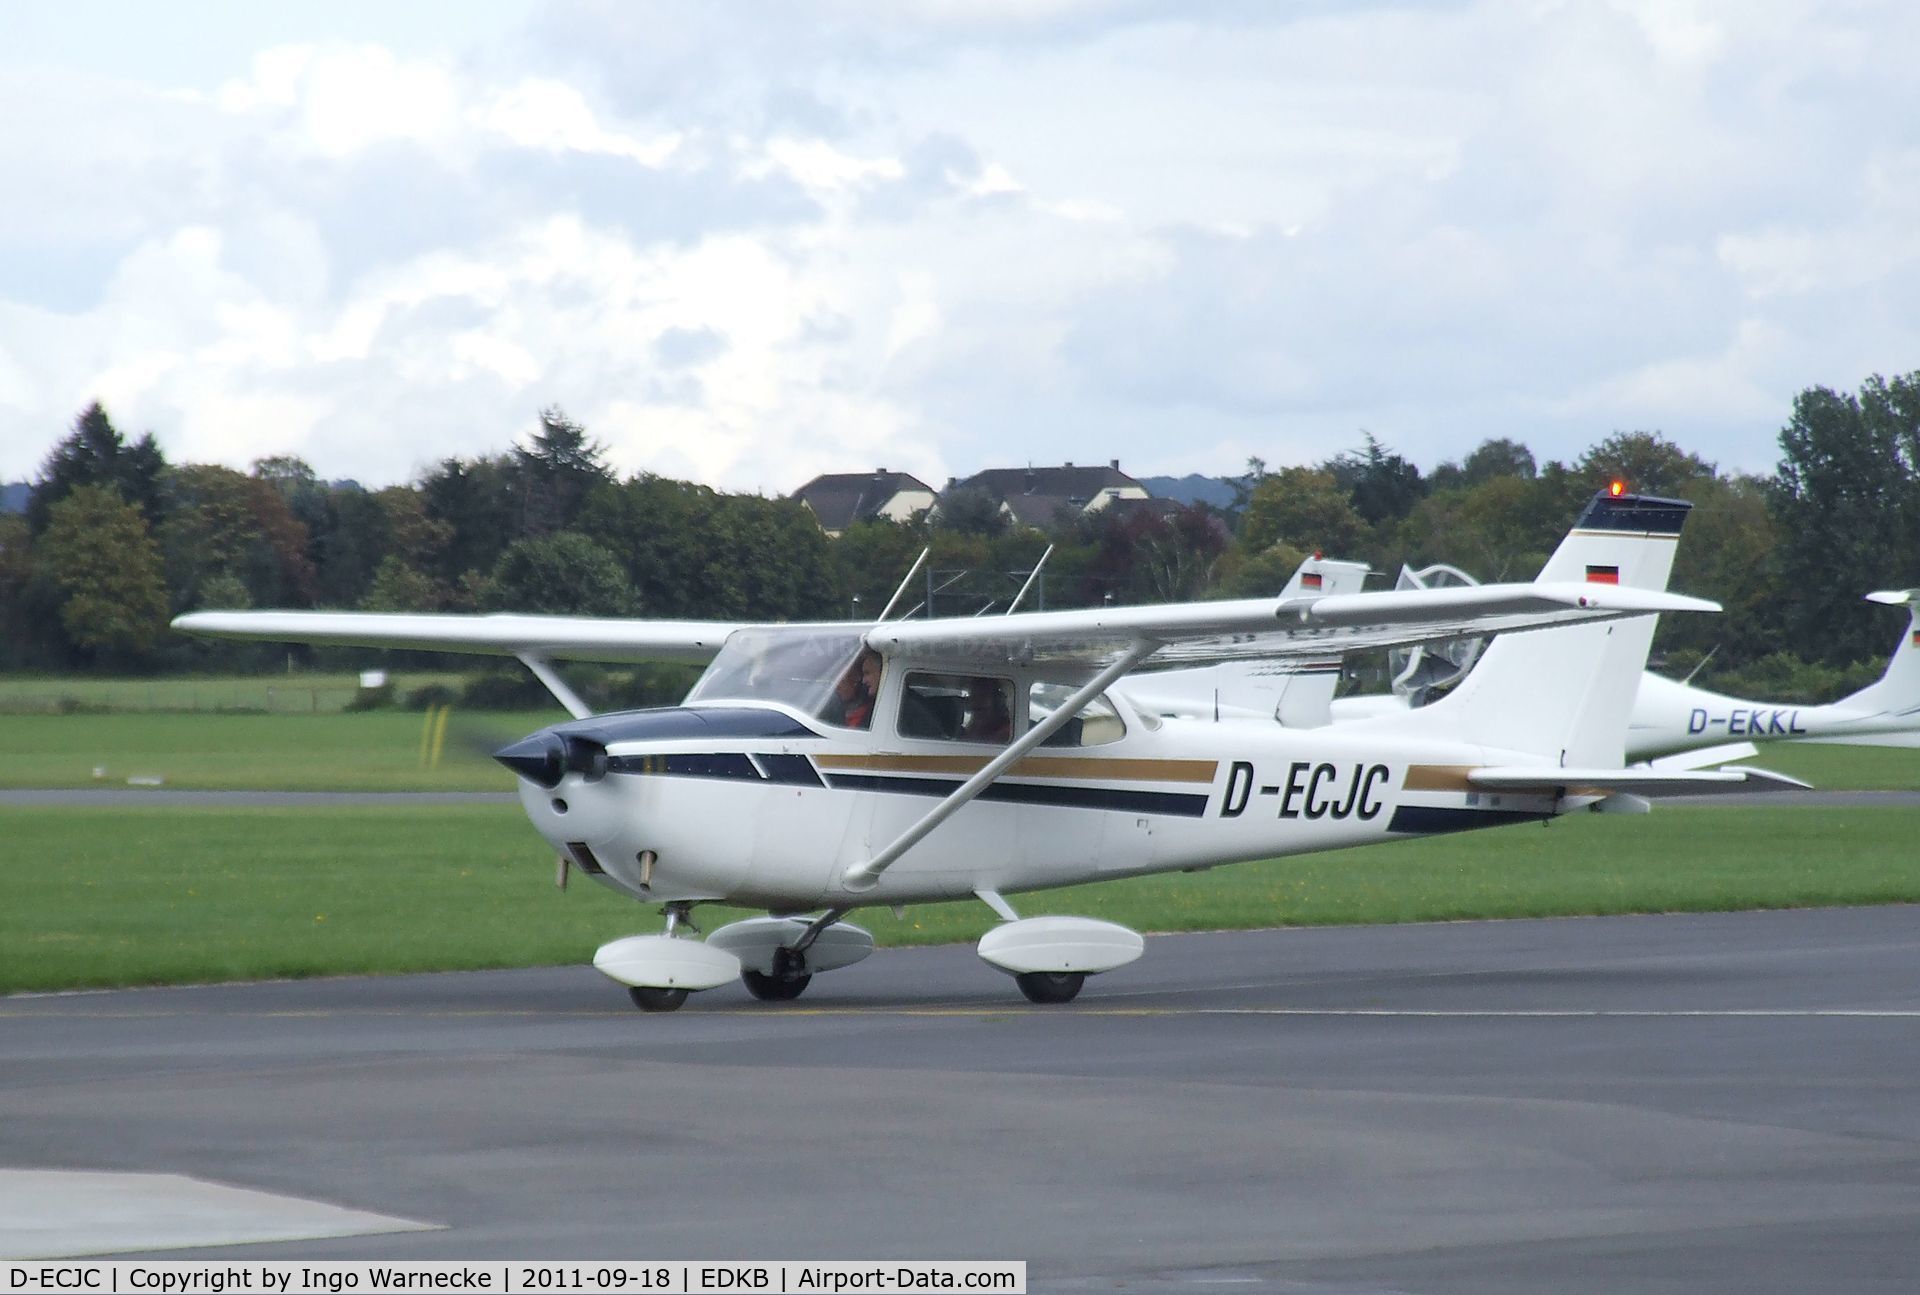 D-ECJC, 1970 Reims F172H Skyhawk C/N 0734, Cessna (Reims) F172H at Bonn-Hangelar airfield